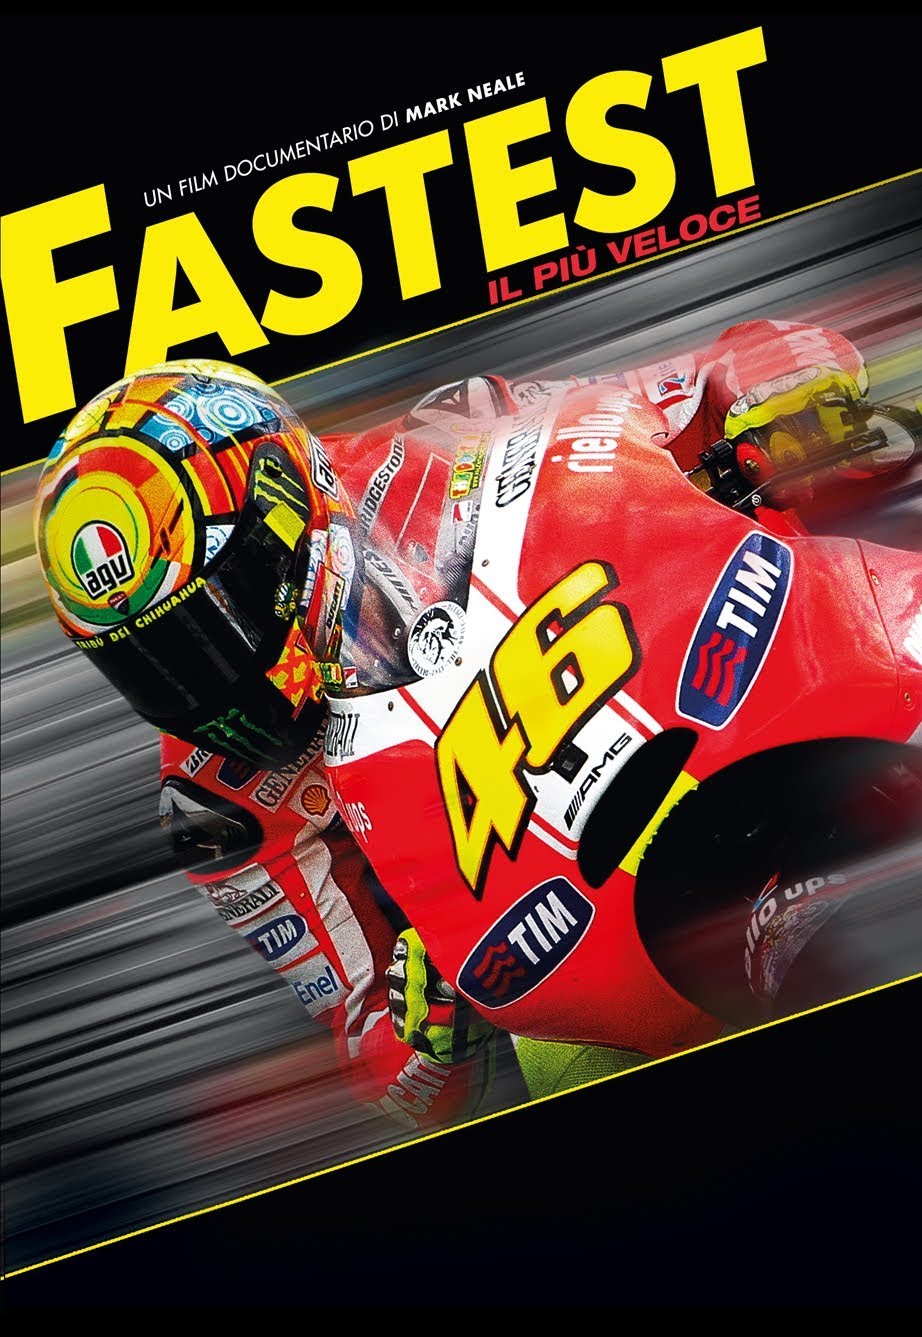 Fastest – Il più veloce [HD] (2011)